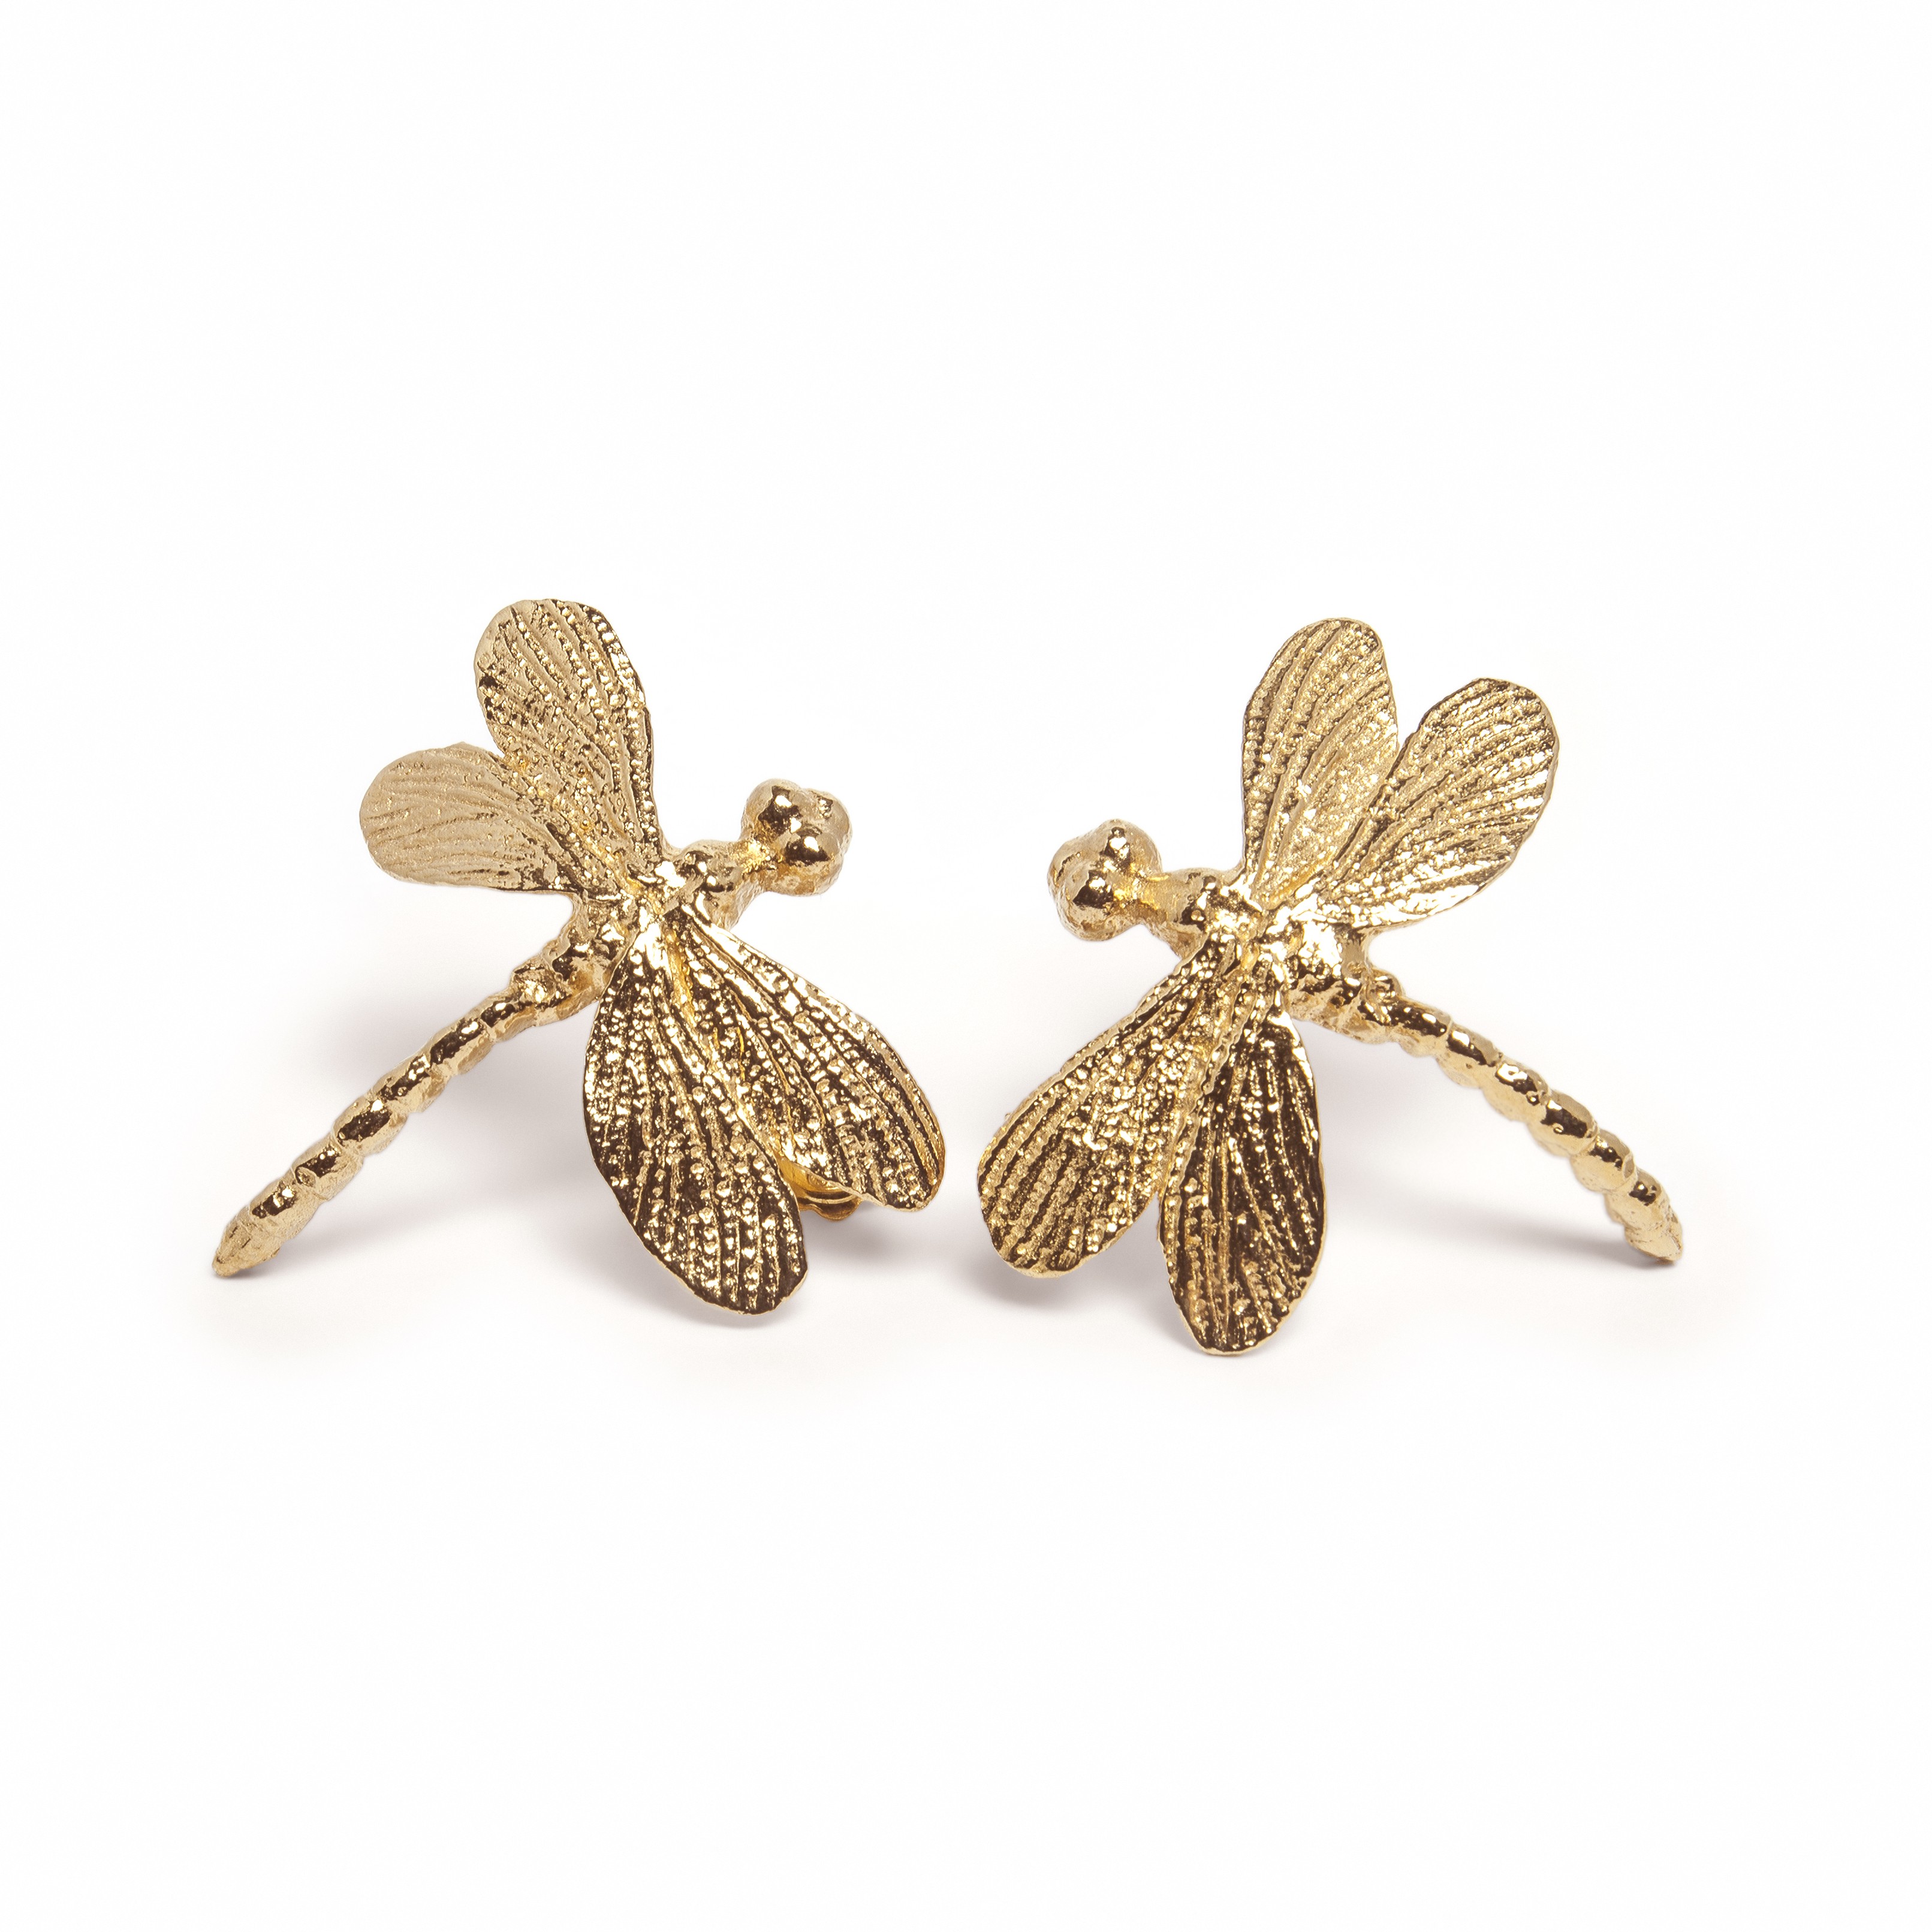 Silver earrings Butterfly